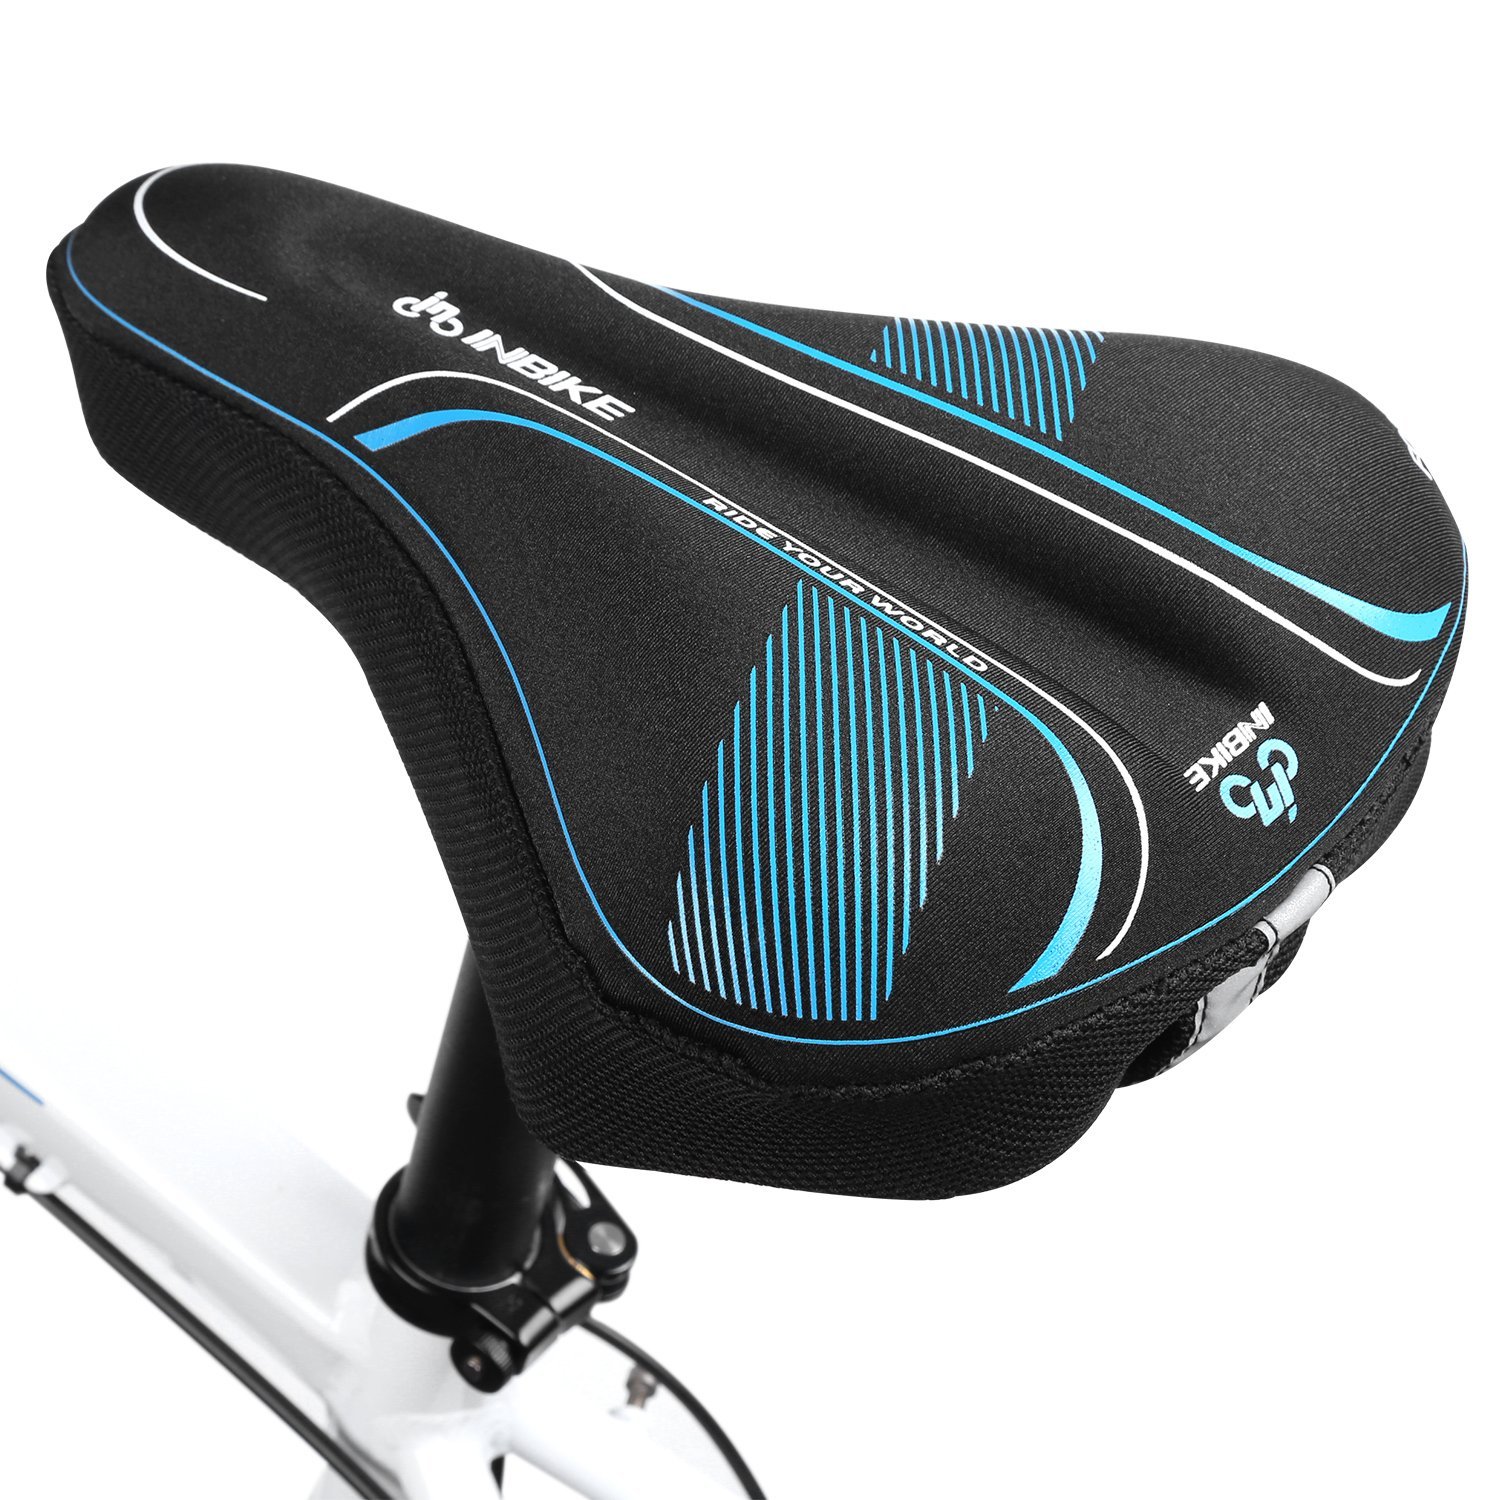 Inbike Memory Foam Comfortable Bicycle Seat Cover Cruiser Bikeroad